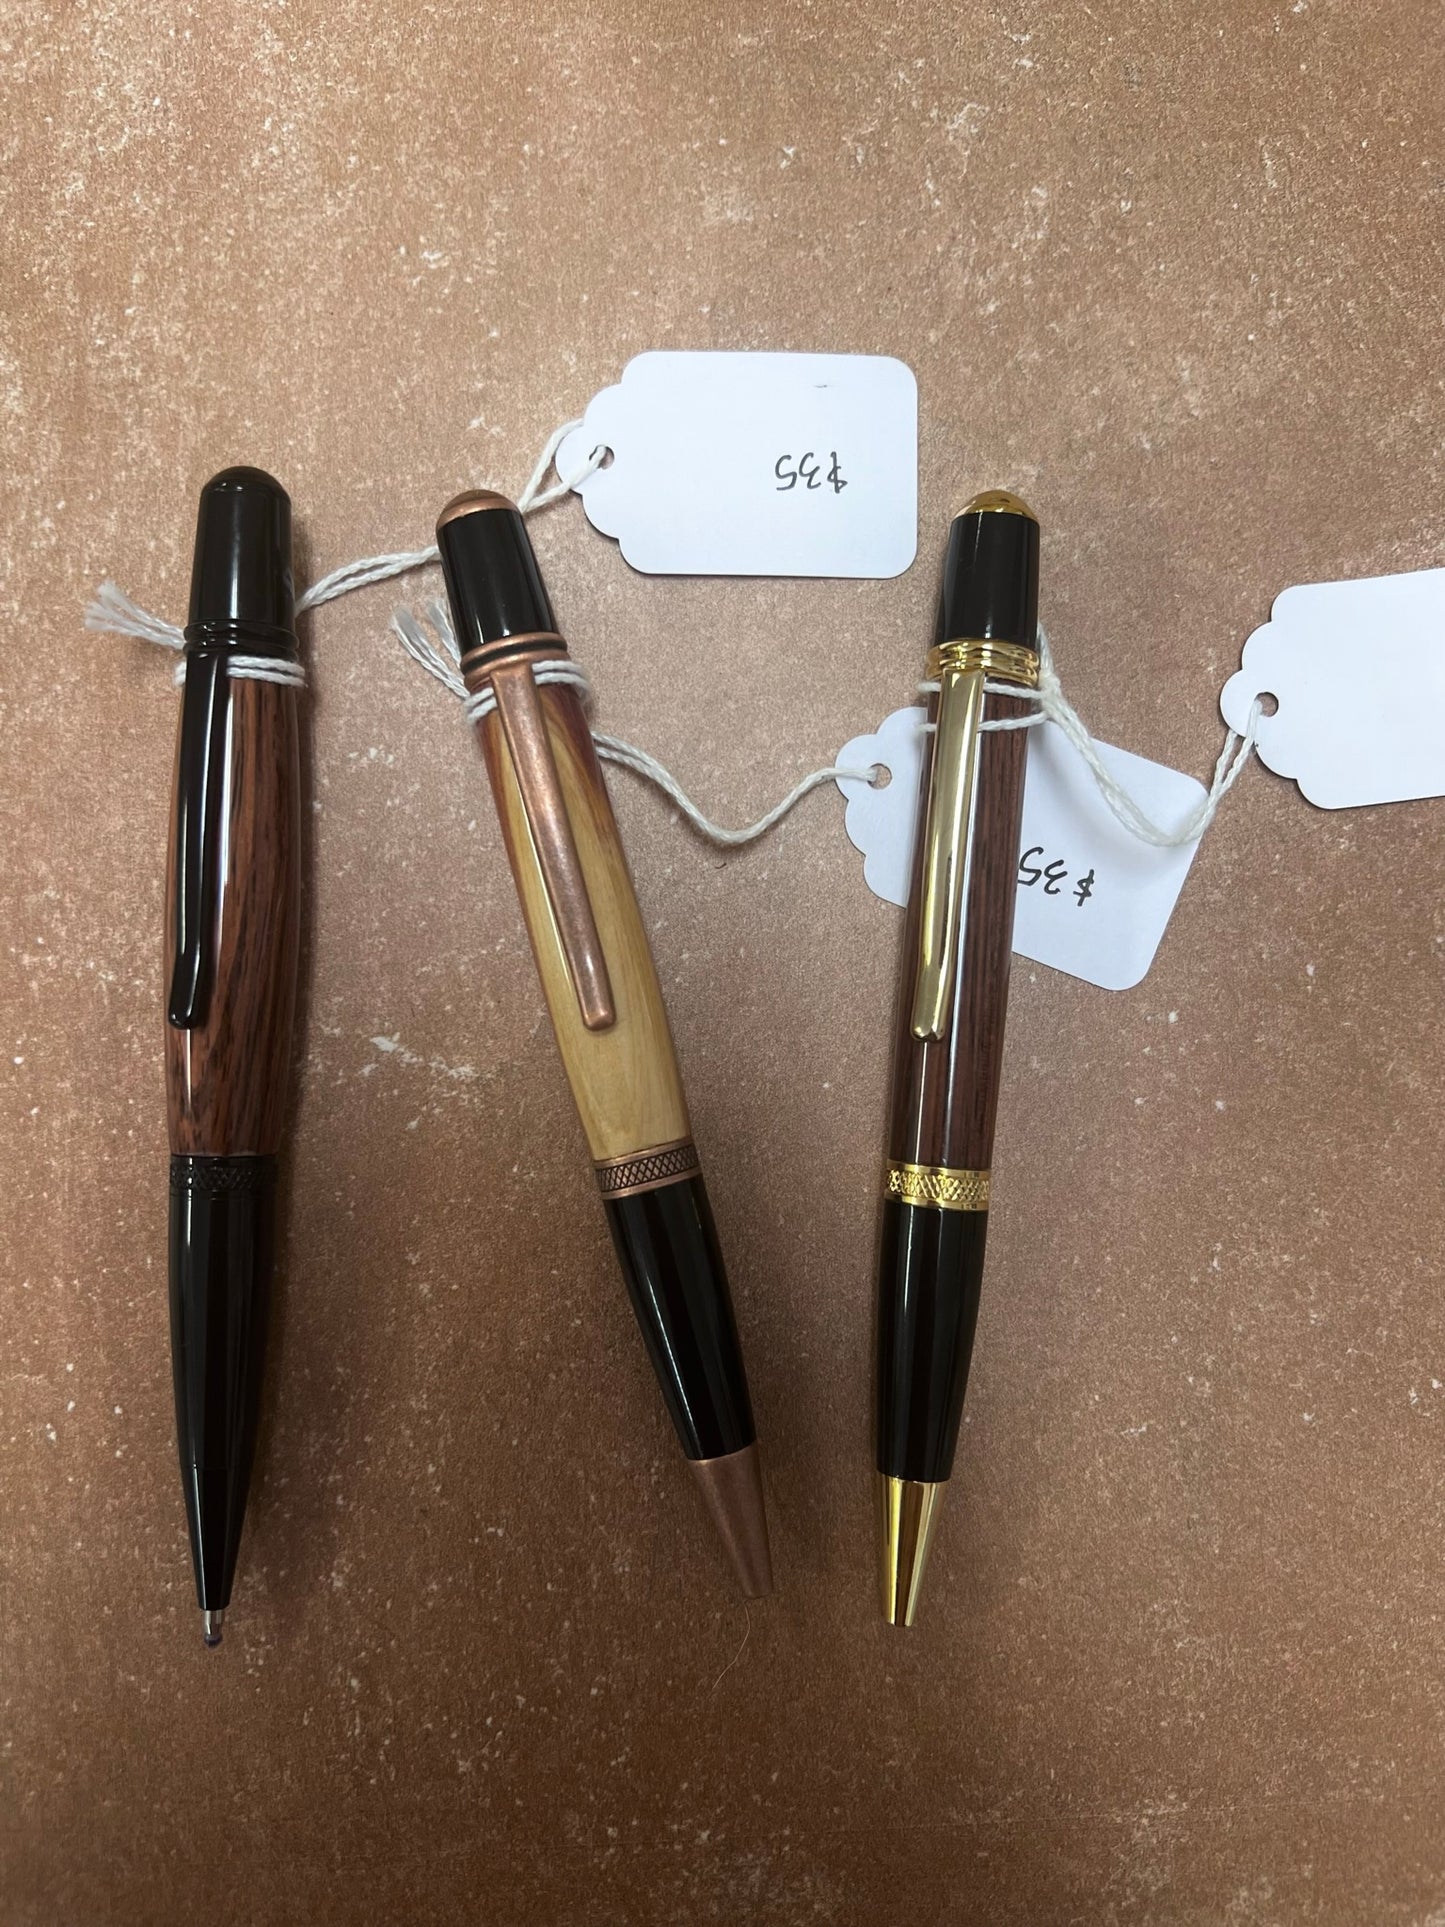 Handturned Wood Pens